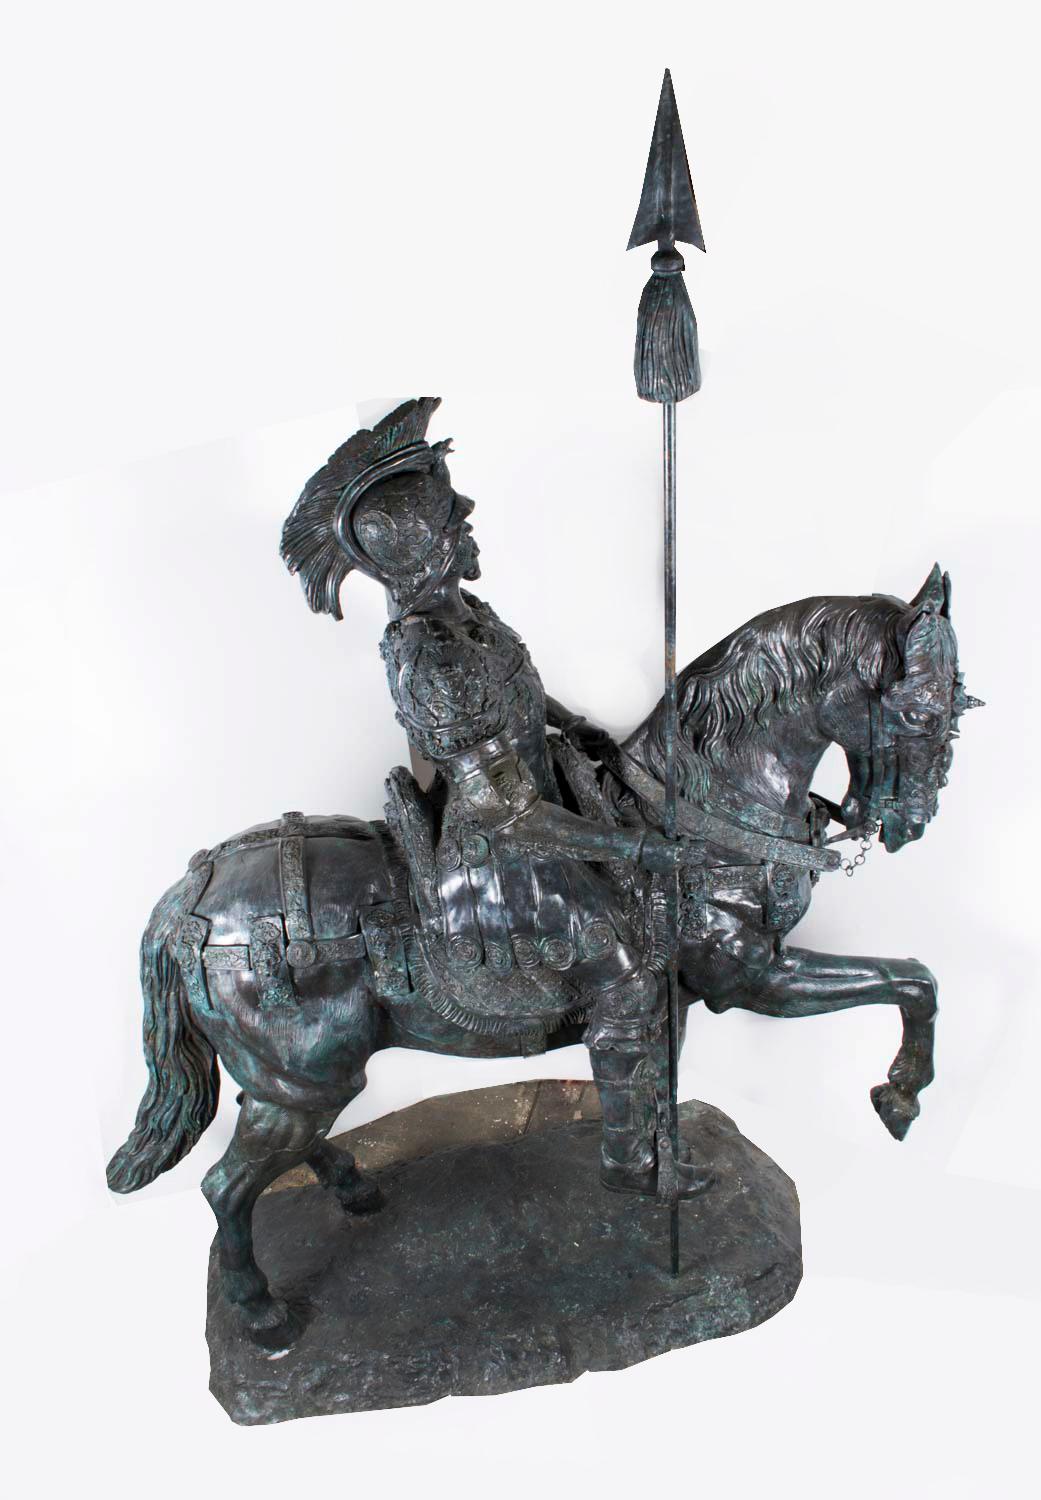 Il s'agit d'une magnifique sculpture en bronze vintage grandeur nature, décorée avec soin, représentant un officier de cavalerie romaine lourdement armé.  à cheval, se lançant triomphalement dans la bataille, datant de la fin du XXe